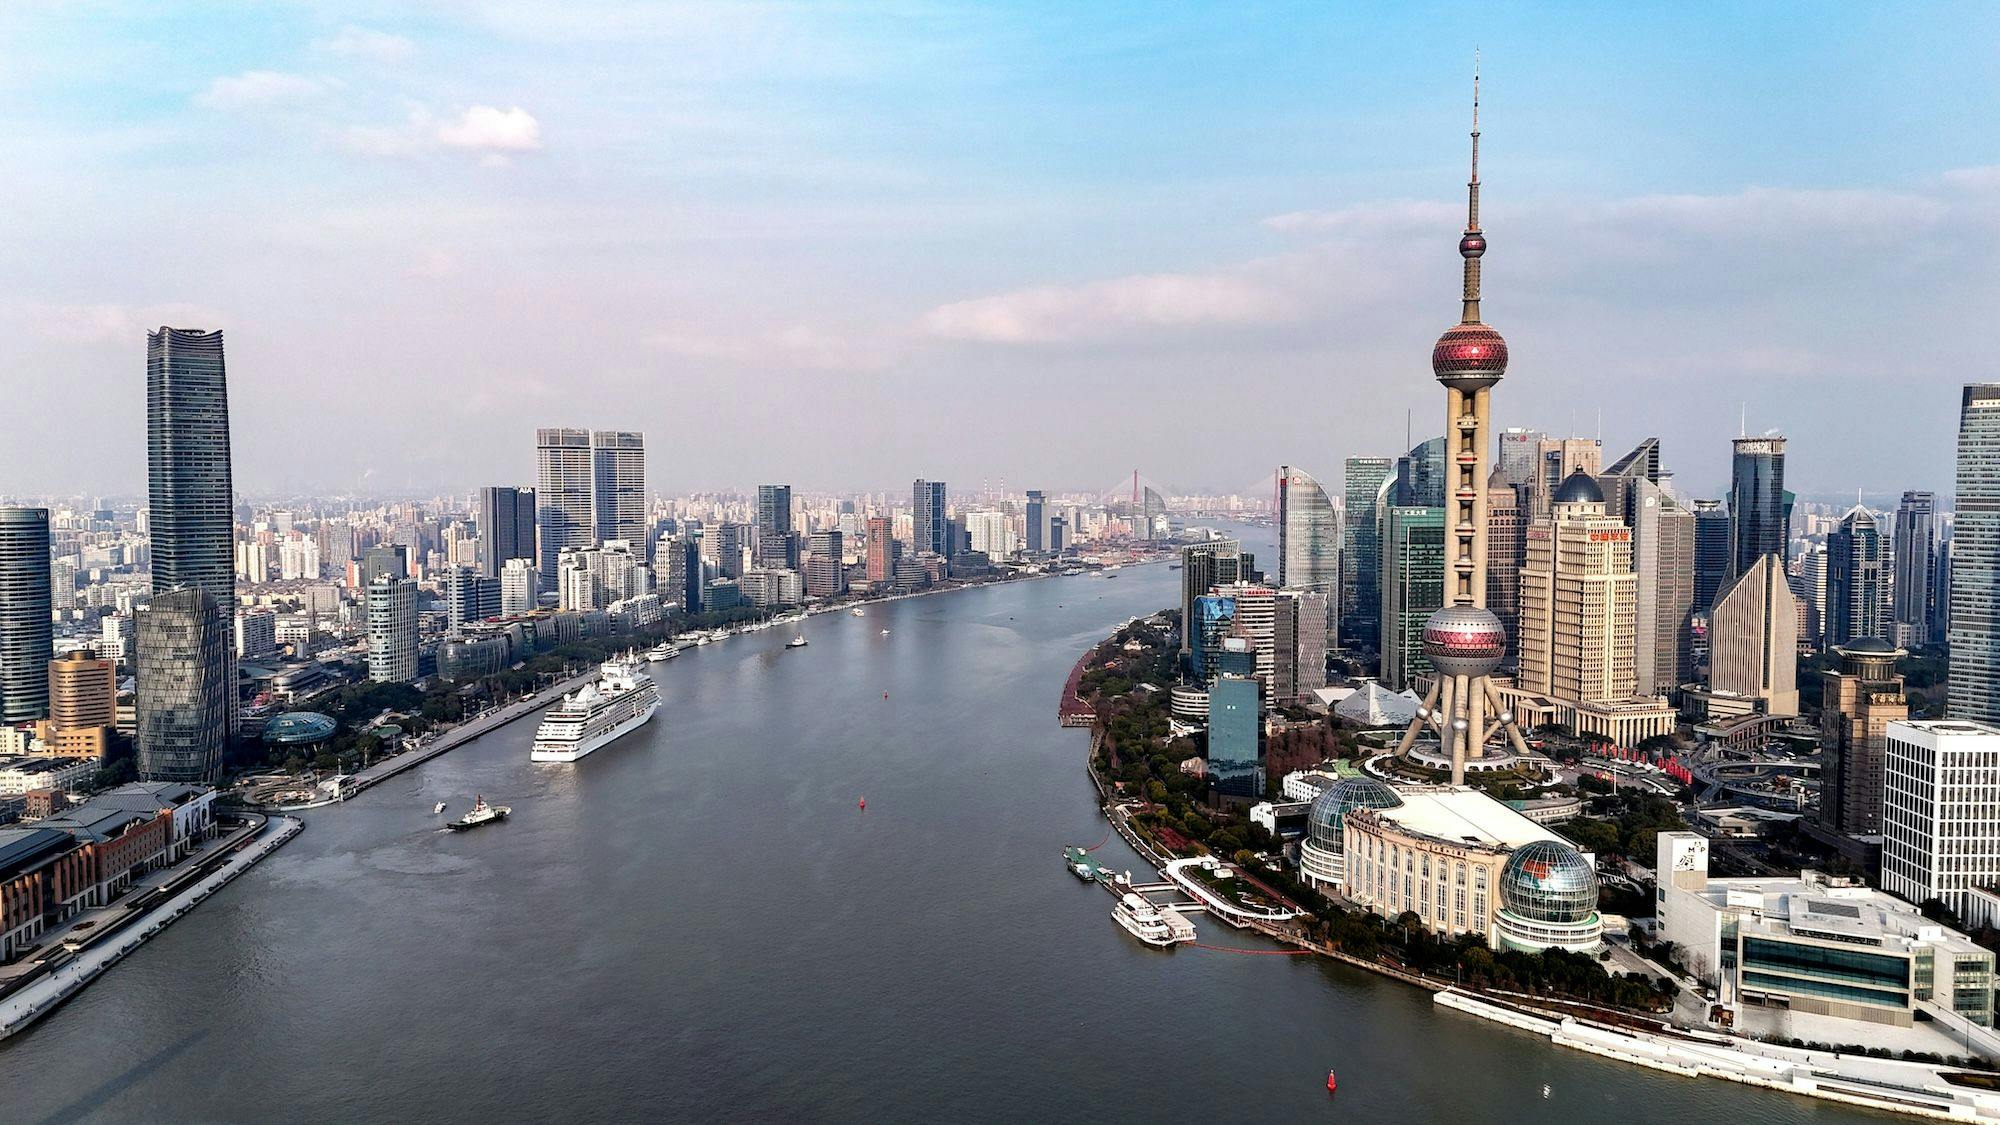 Pilot-Freihandelszone Lujiazui in Shanghai Ein Luftbild zeigt das Gebiet Lujiazui der Pilot-Freihandelszone in Shanghai, der ersten Pilot-Freihandelszone Chinas.